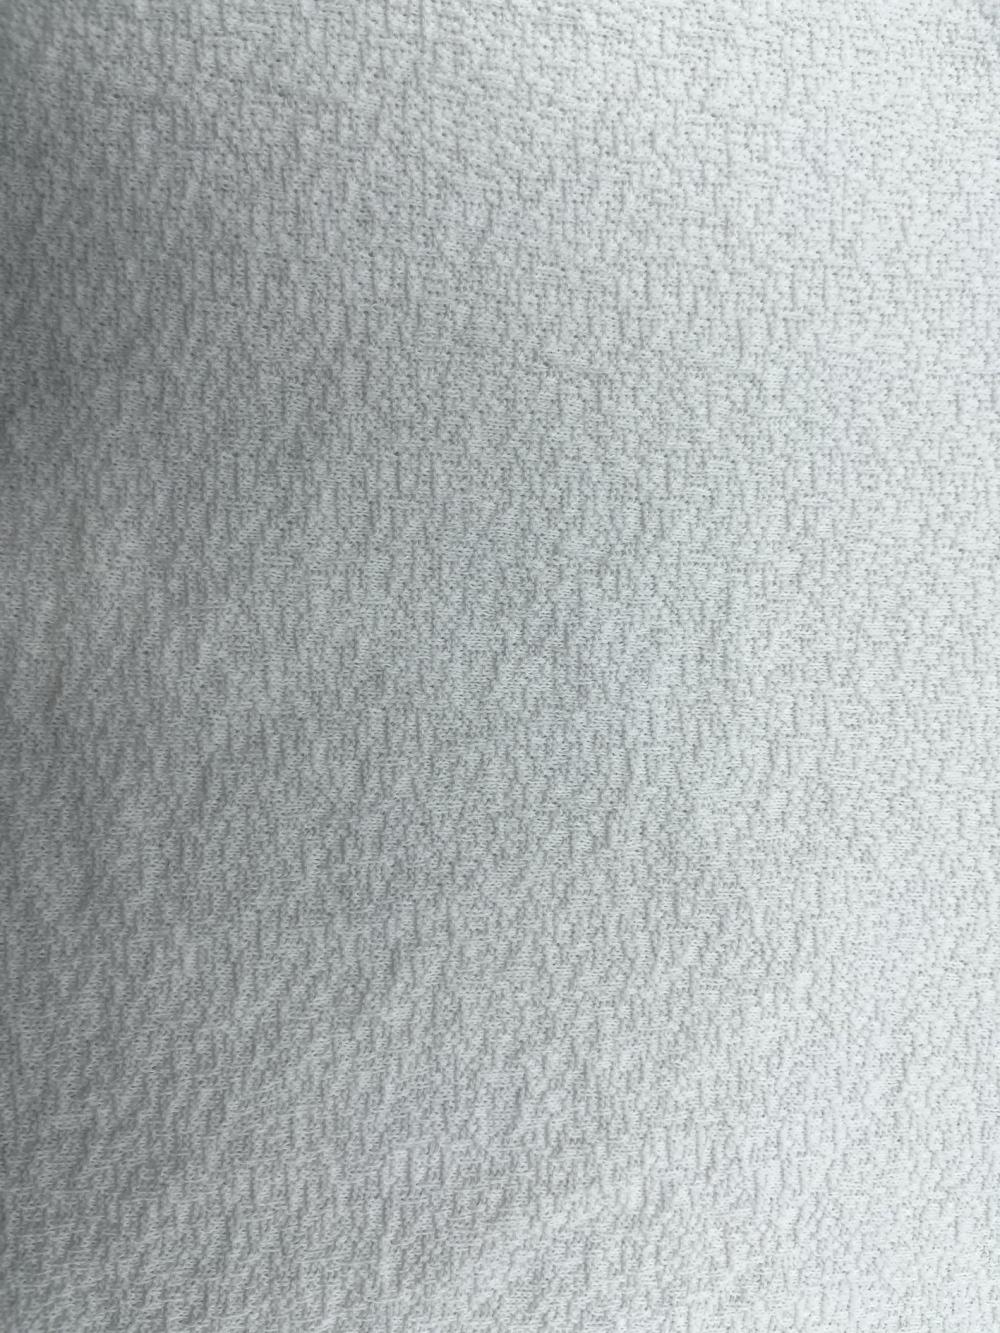 Tissus texturés 100% coton